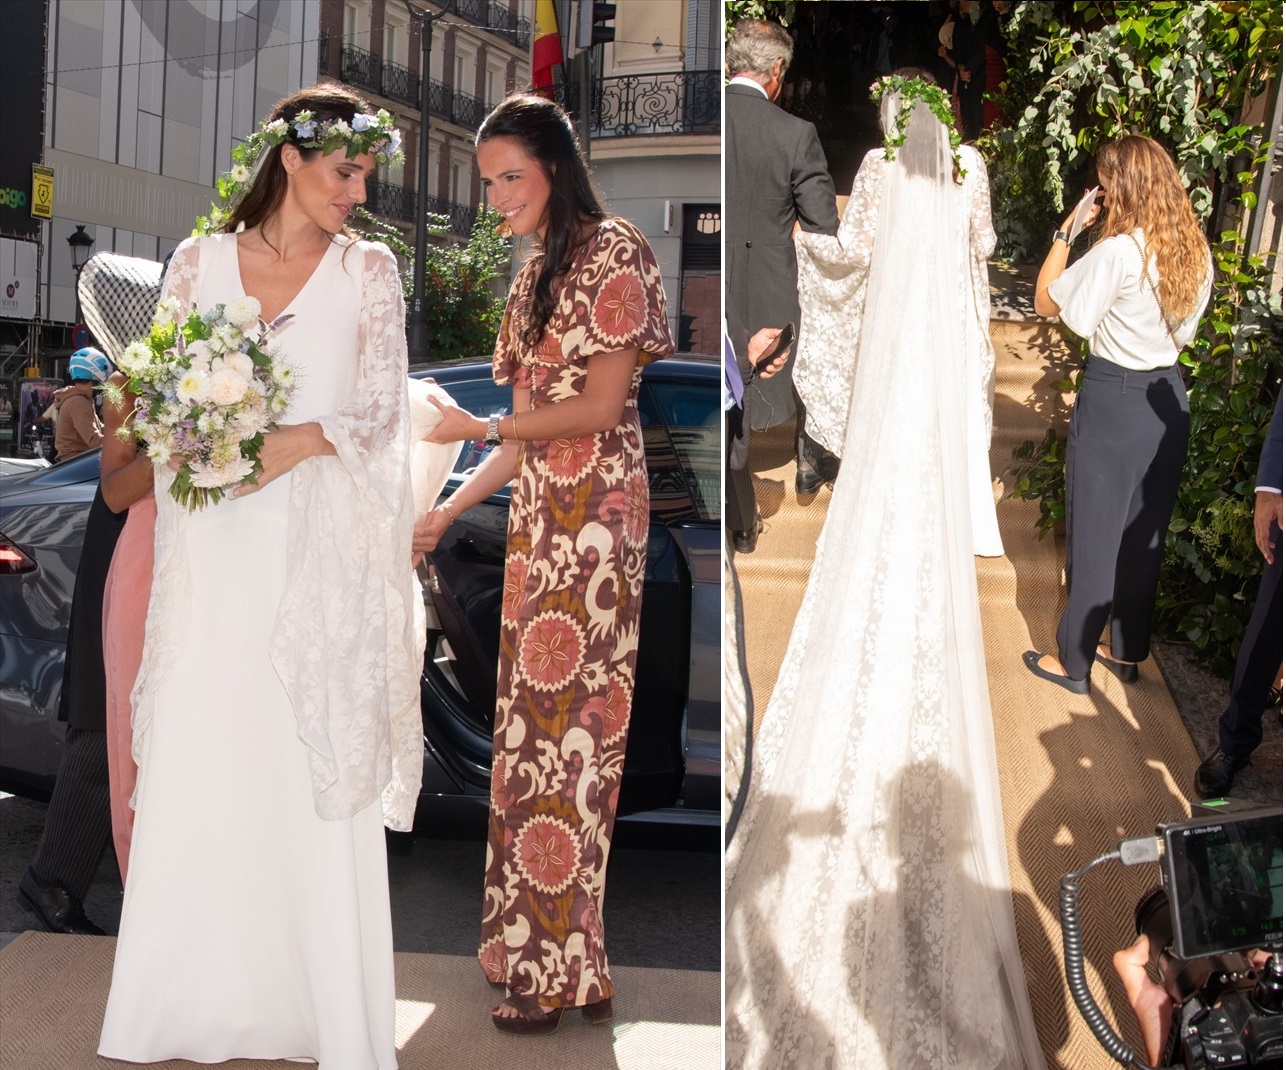 Clotilde Entrecanales eligió un vestido de novia estilo boho el día de su boda